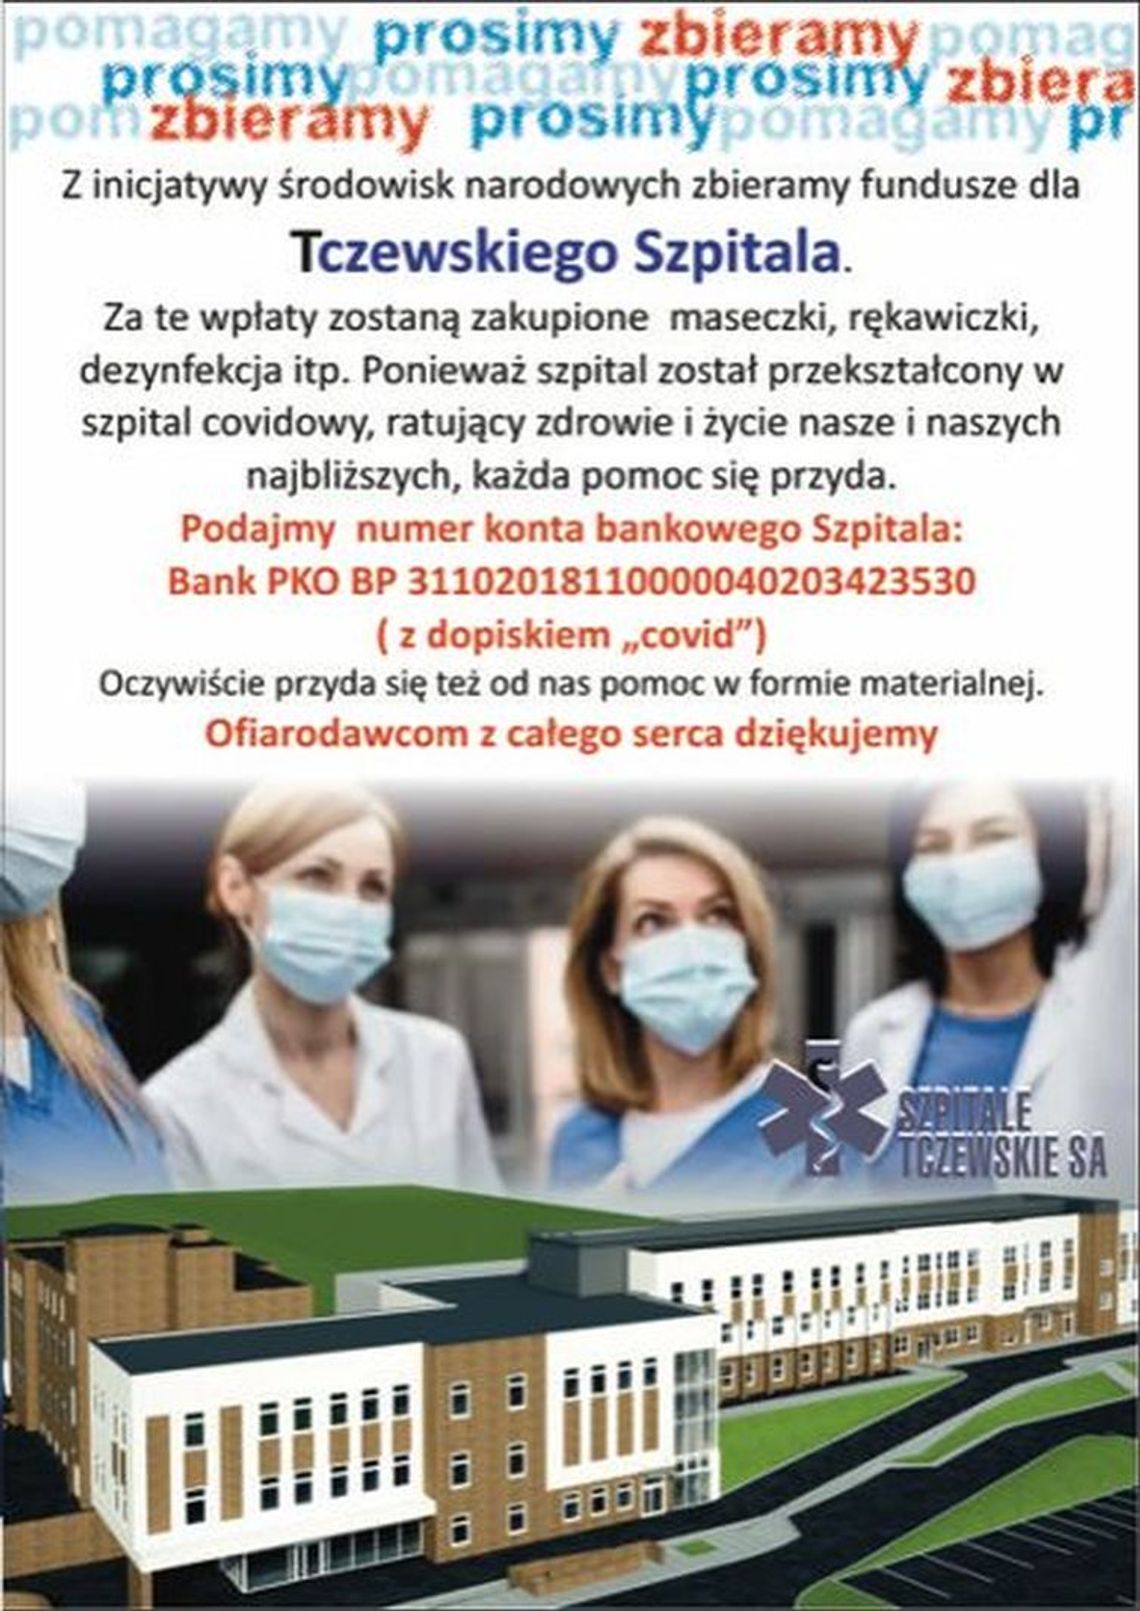 Fundusze dla Tczewskiego Szpitala